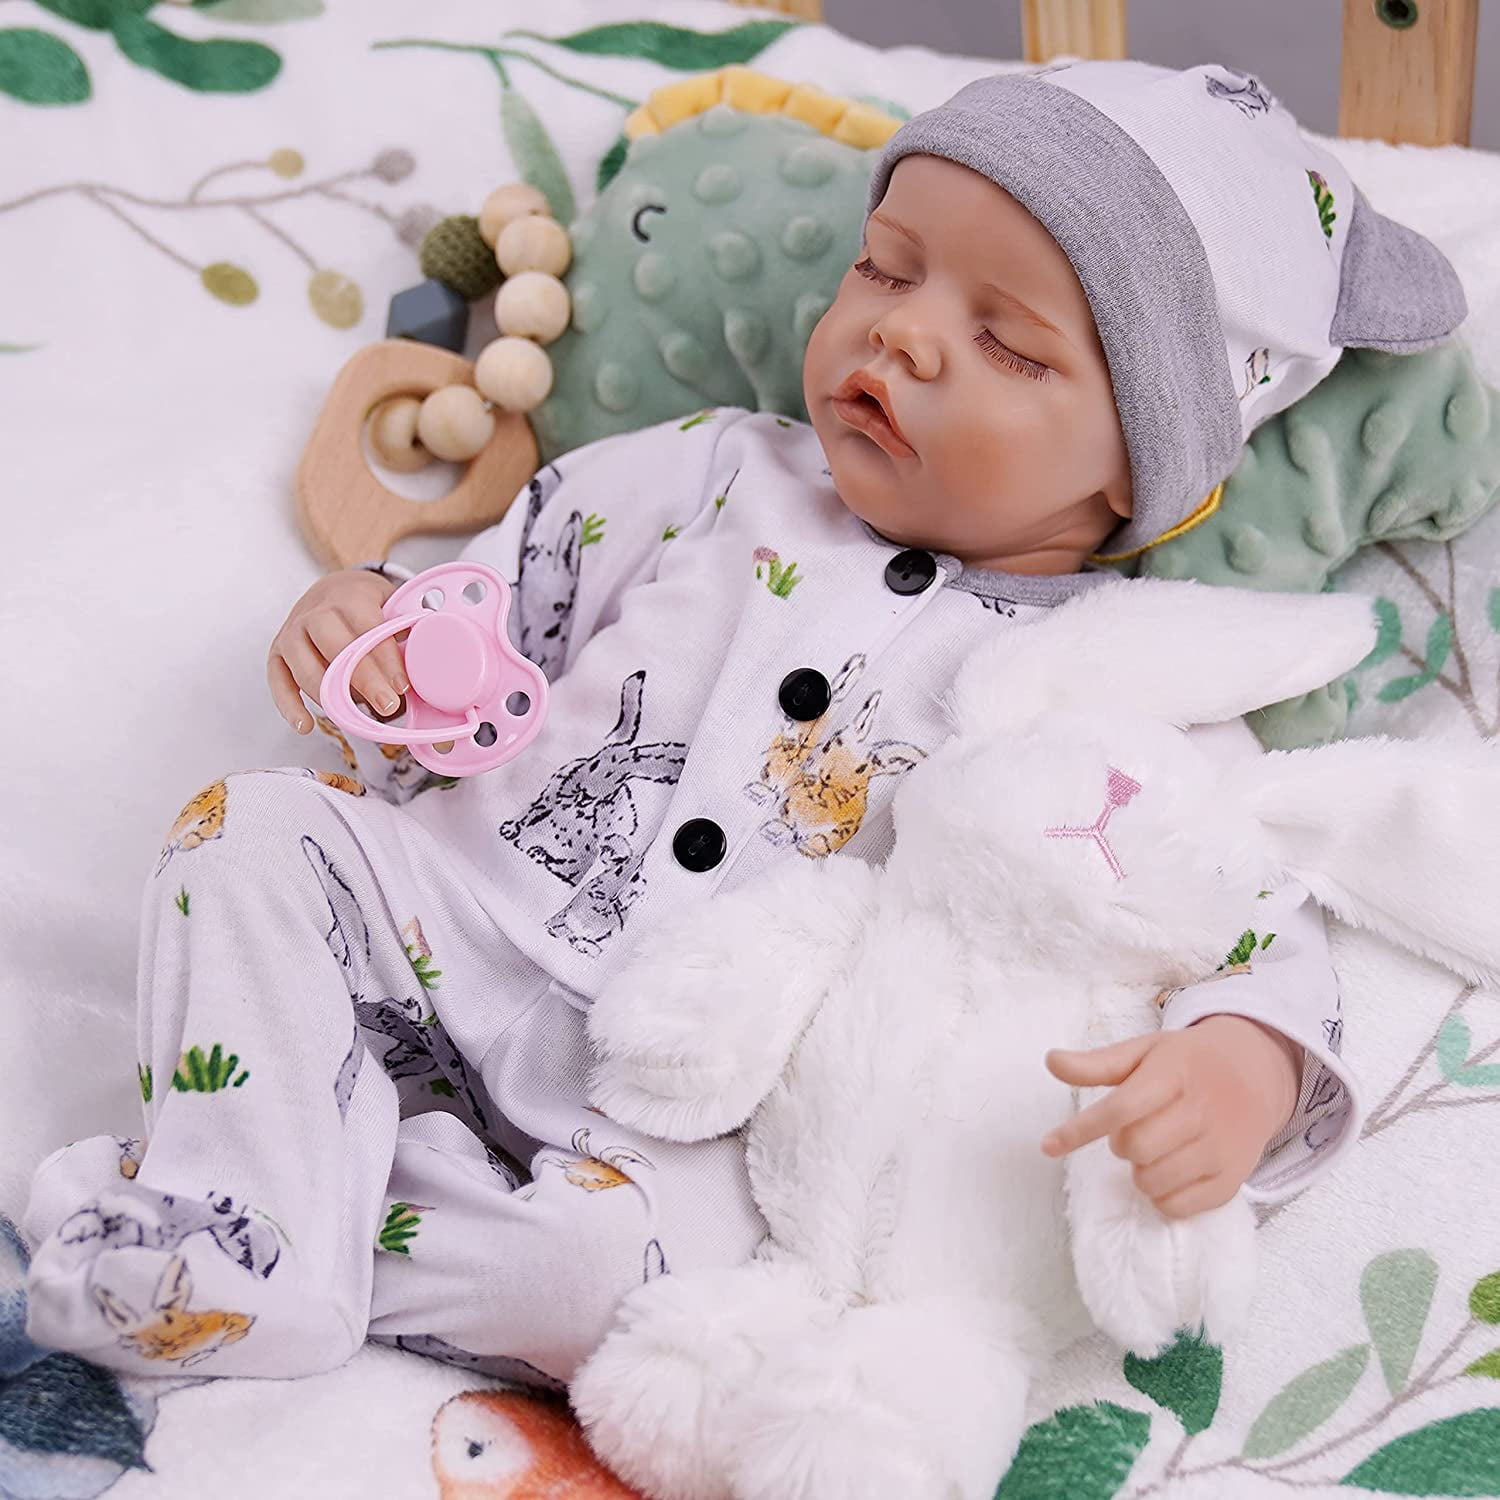 Lifelike Newborn Doll Realistic Reborn Baby Boy or Girl Doll. CE SAFETY TESTED 